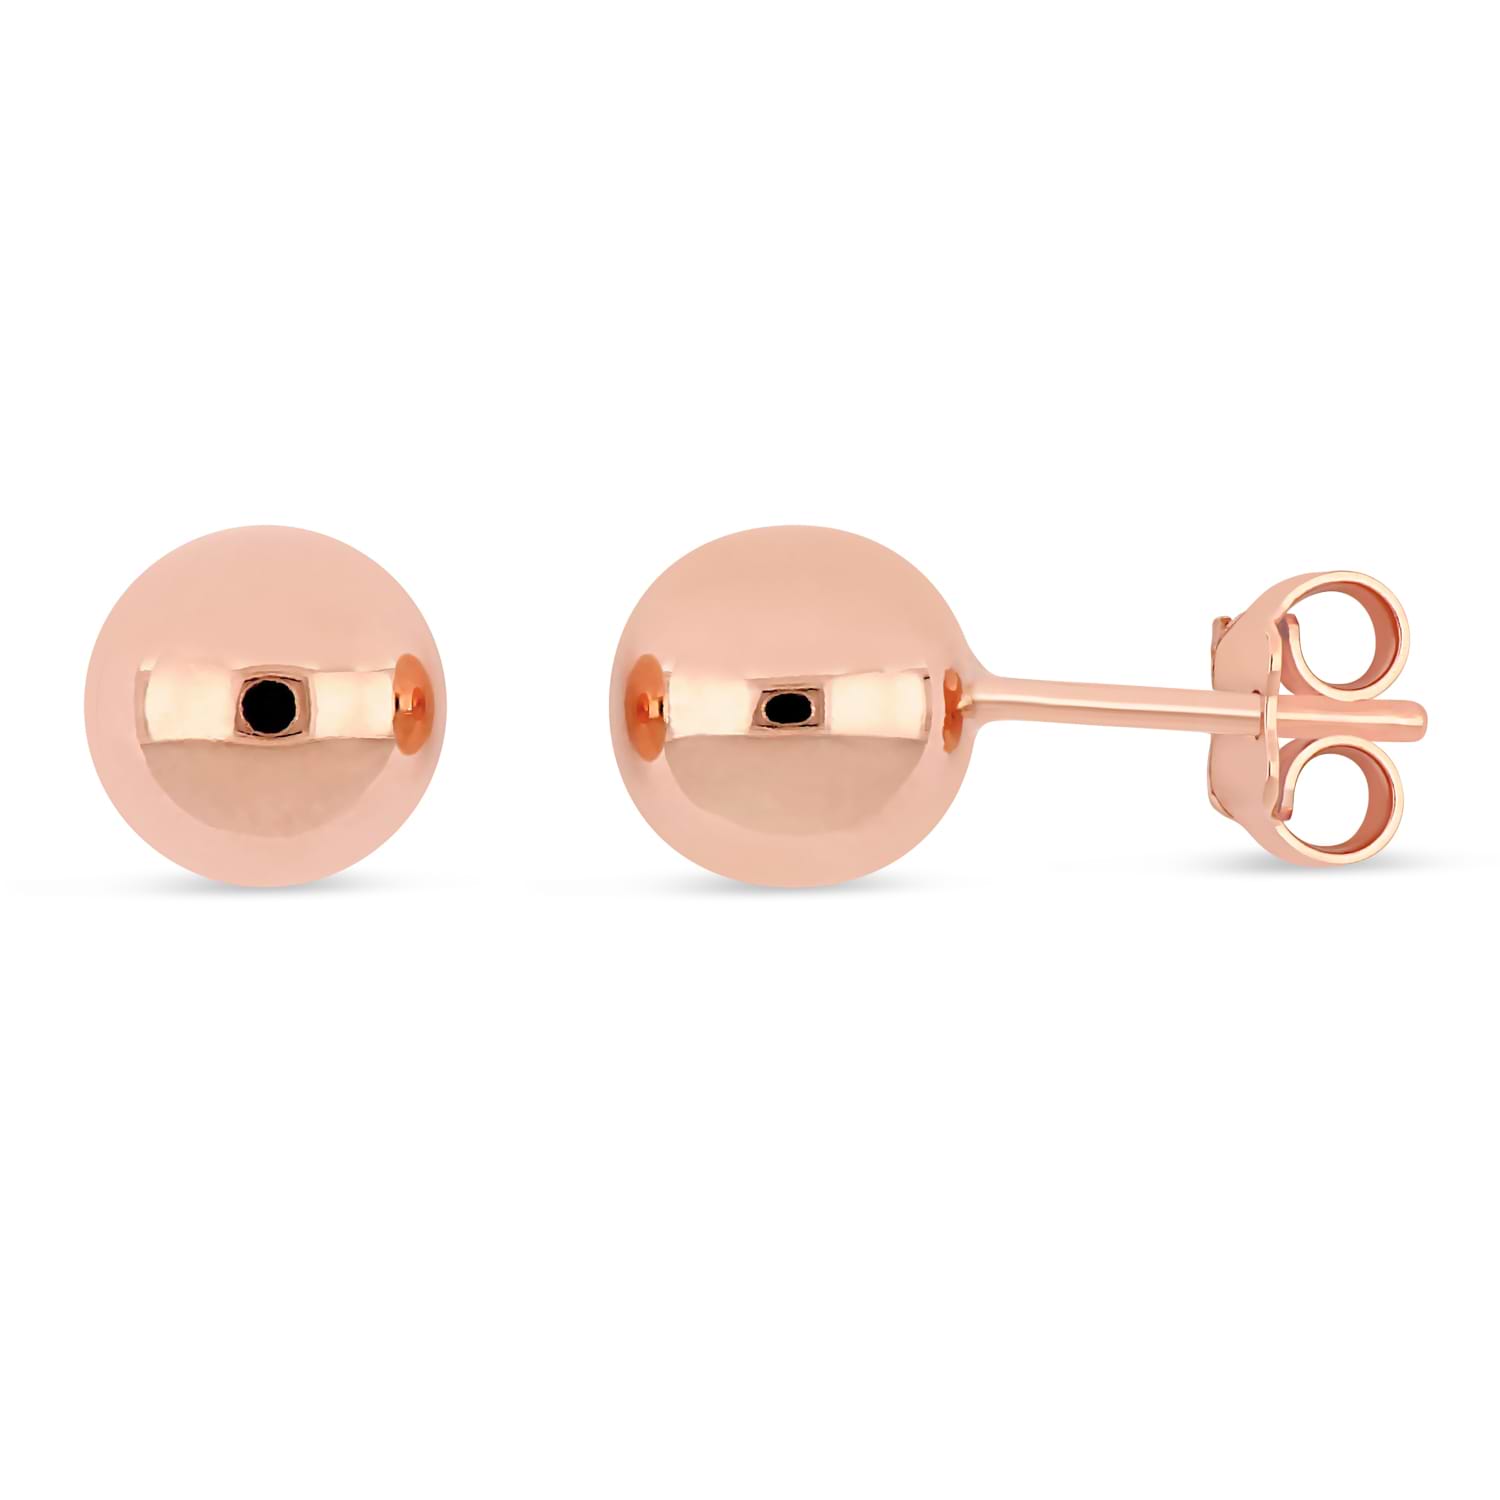 Small Ball Earrings 18k Rose Gold